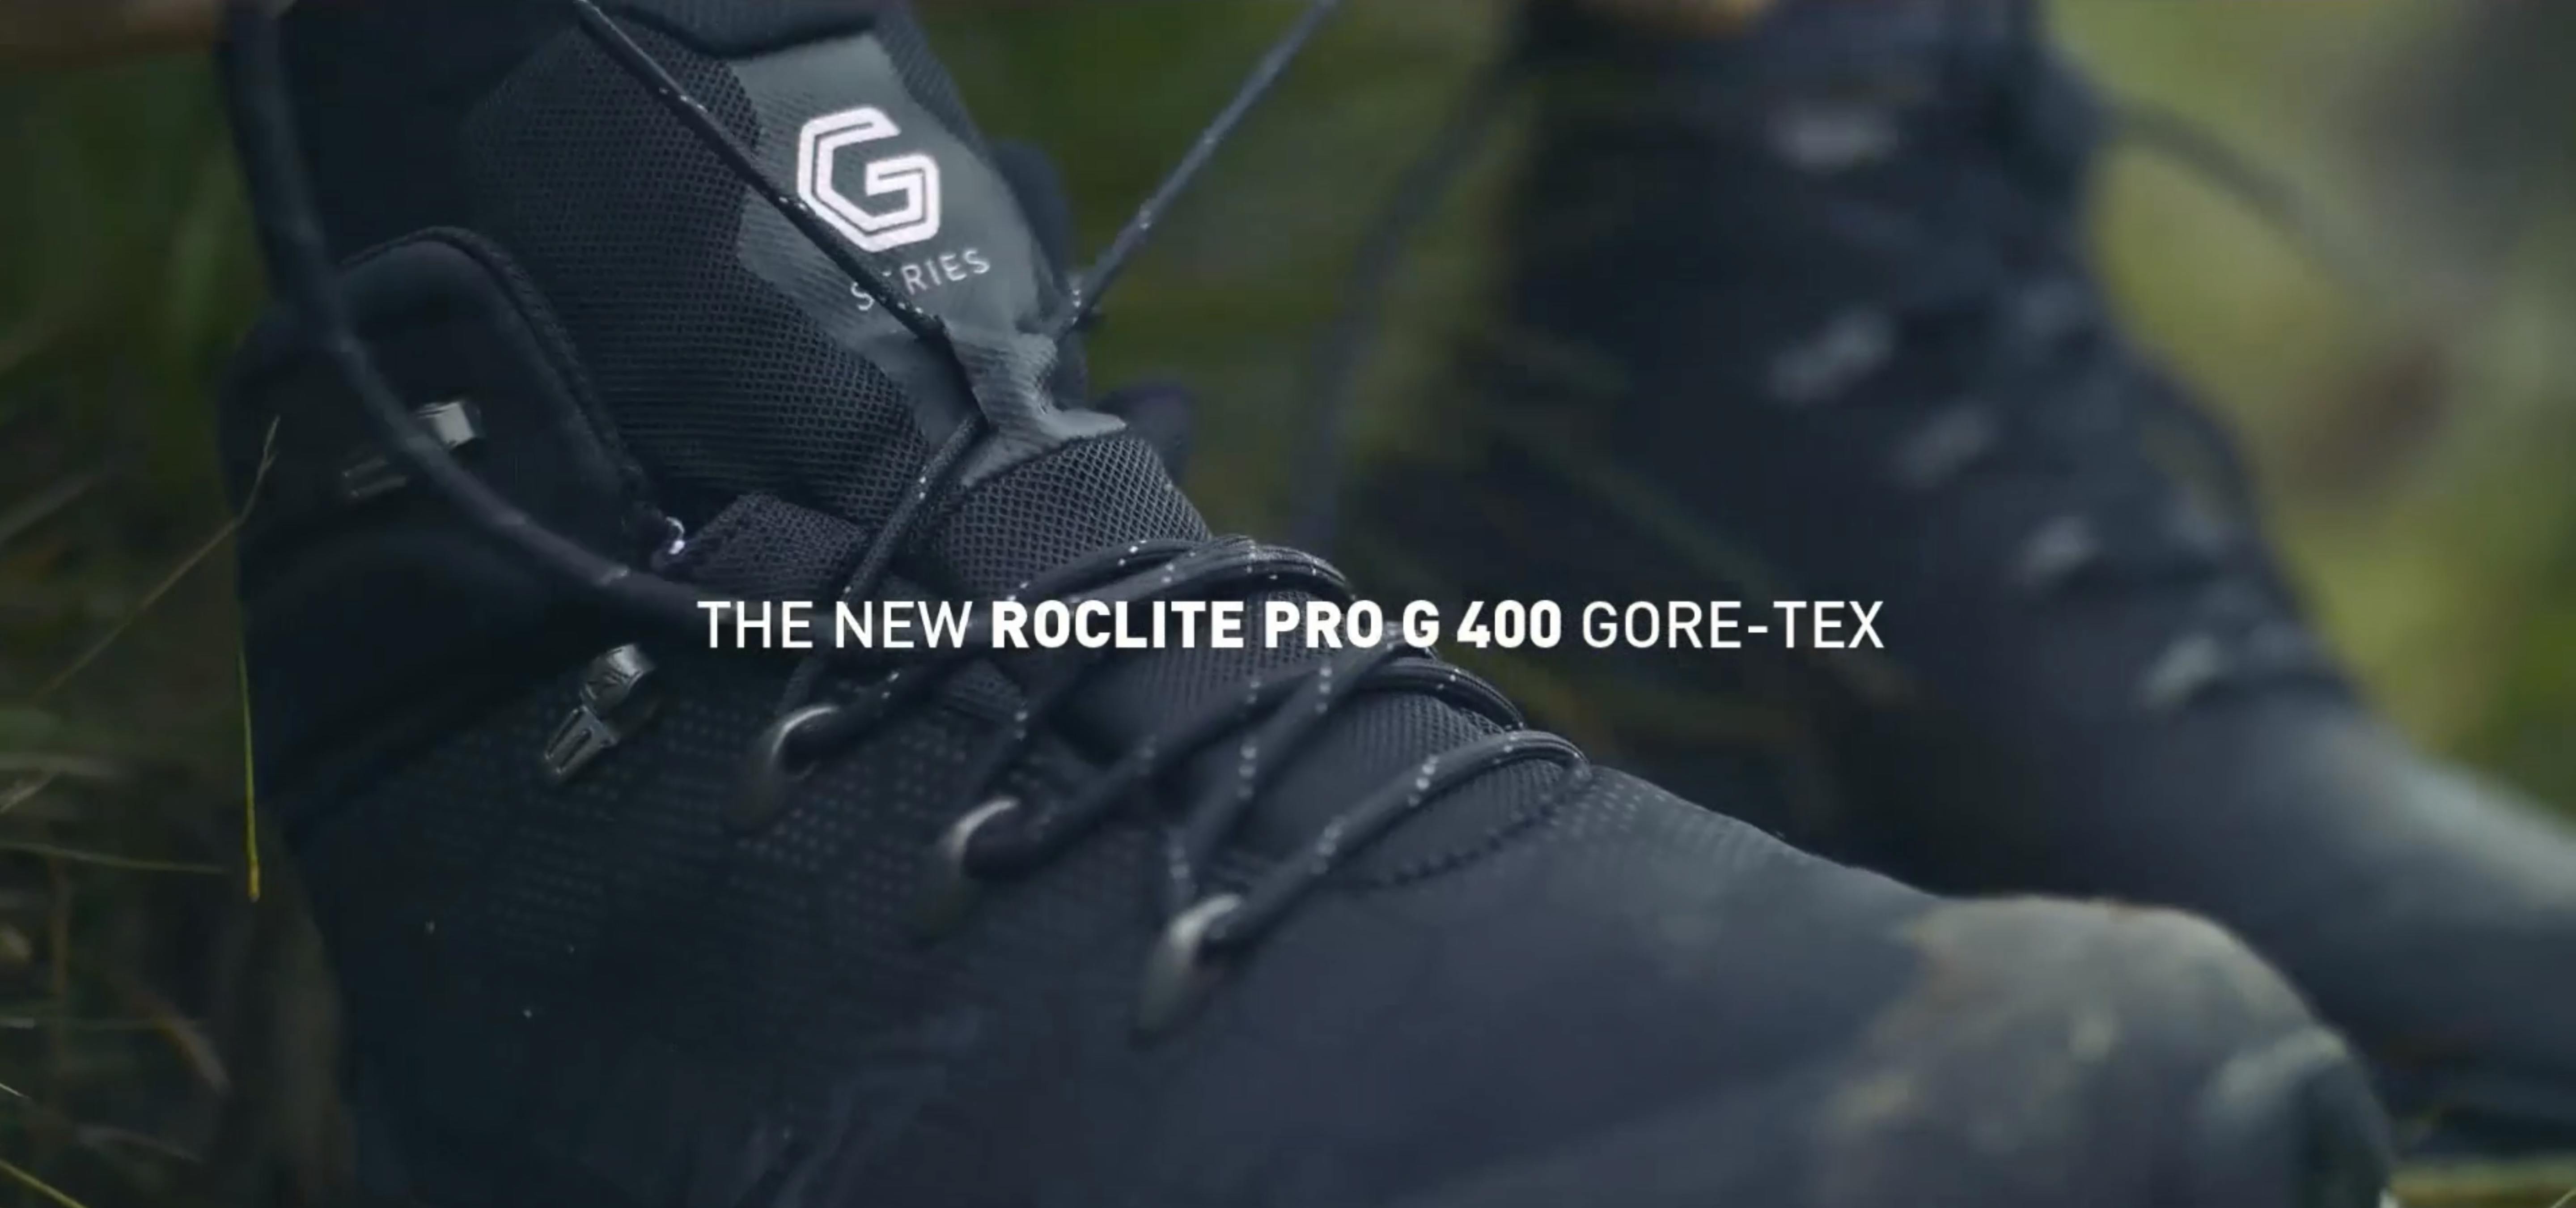 The New Roclite Pro G 400 Gore-Tex